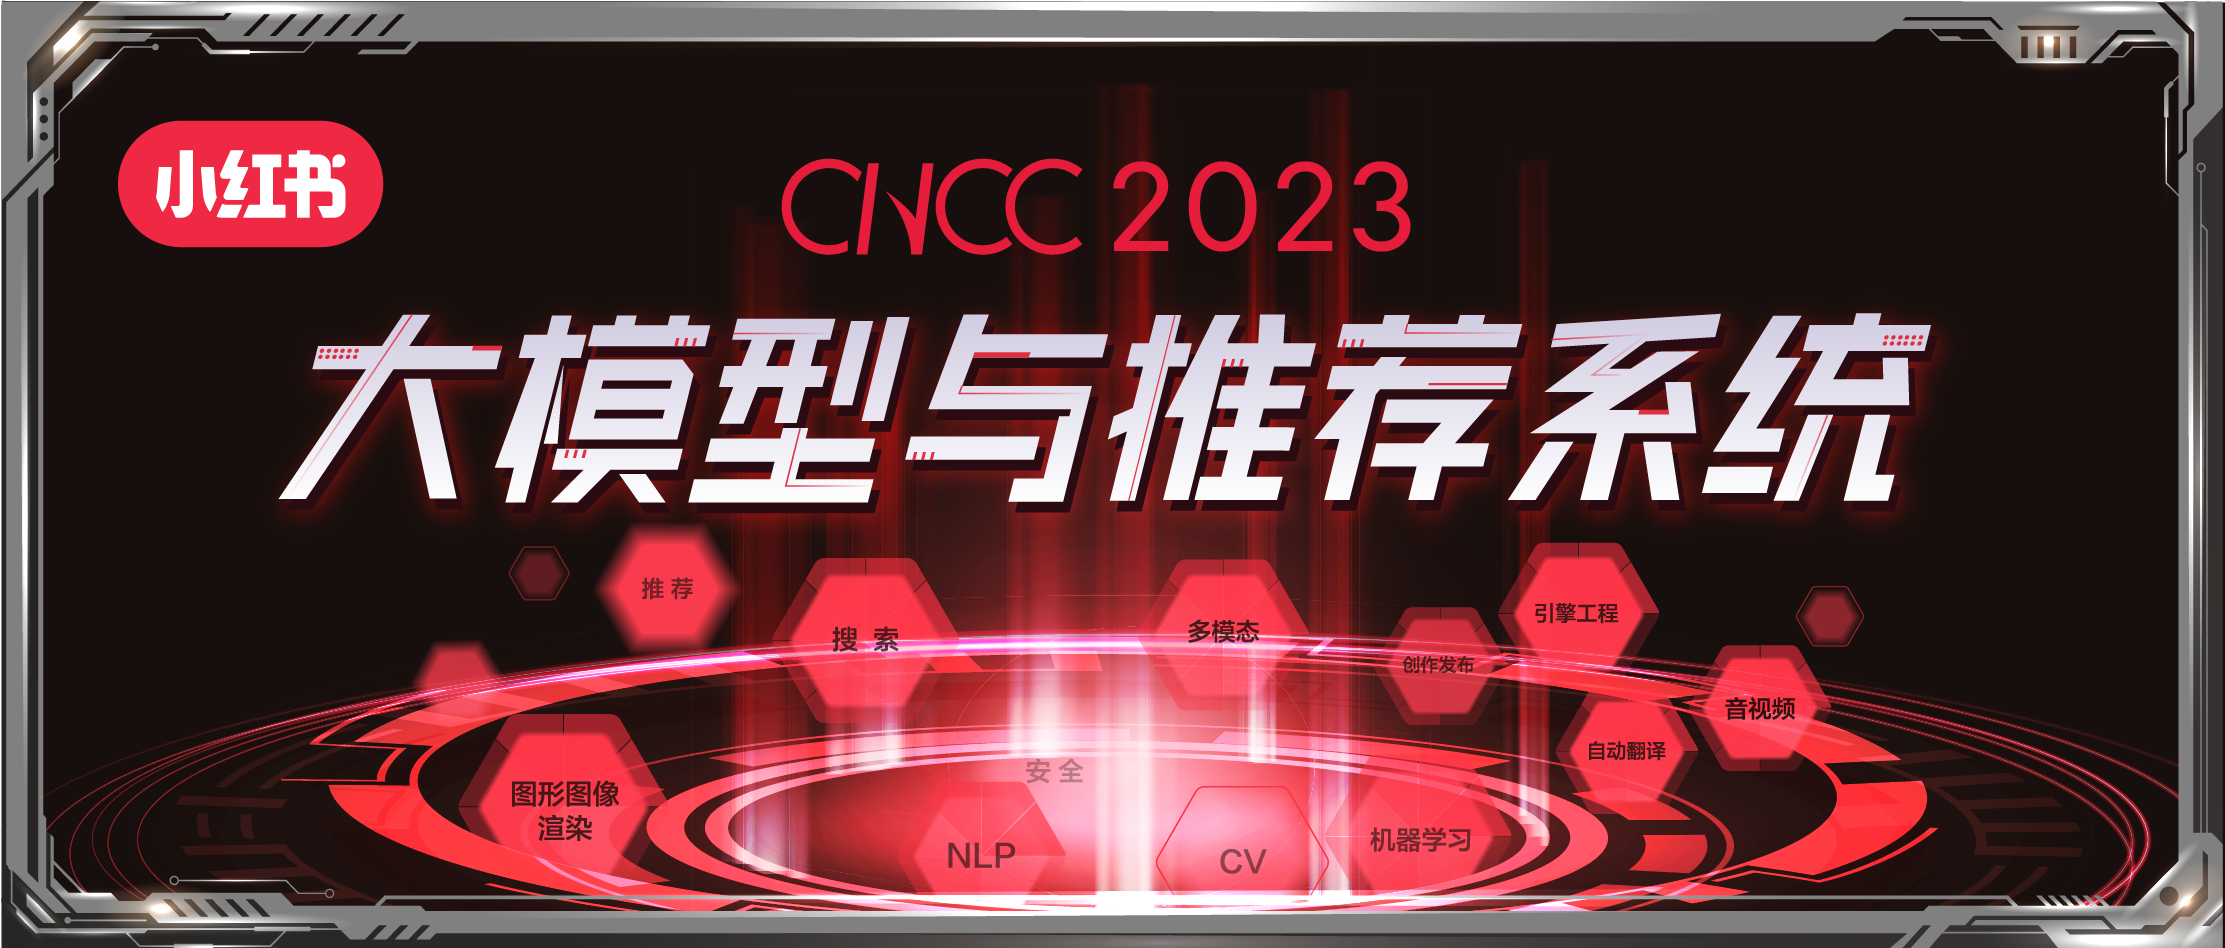 CNCC 2023 | 大模型全面革新推荐系统！产学界多位大咖精彩献言